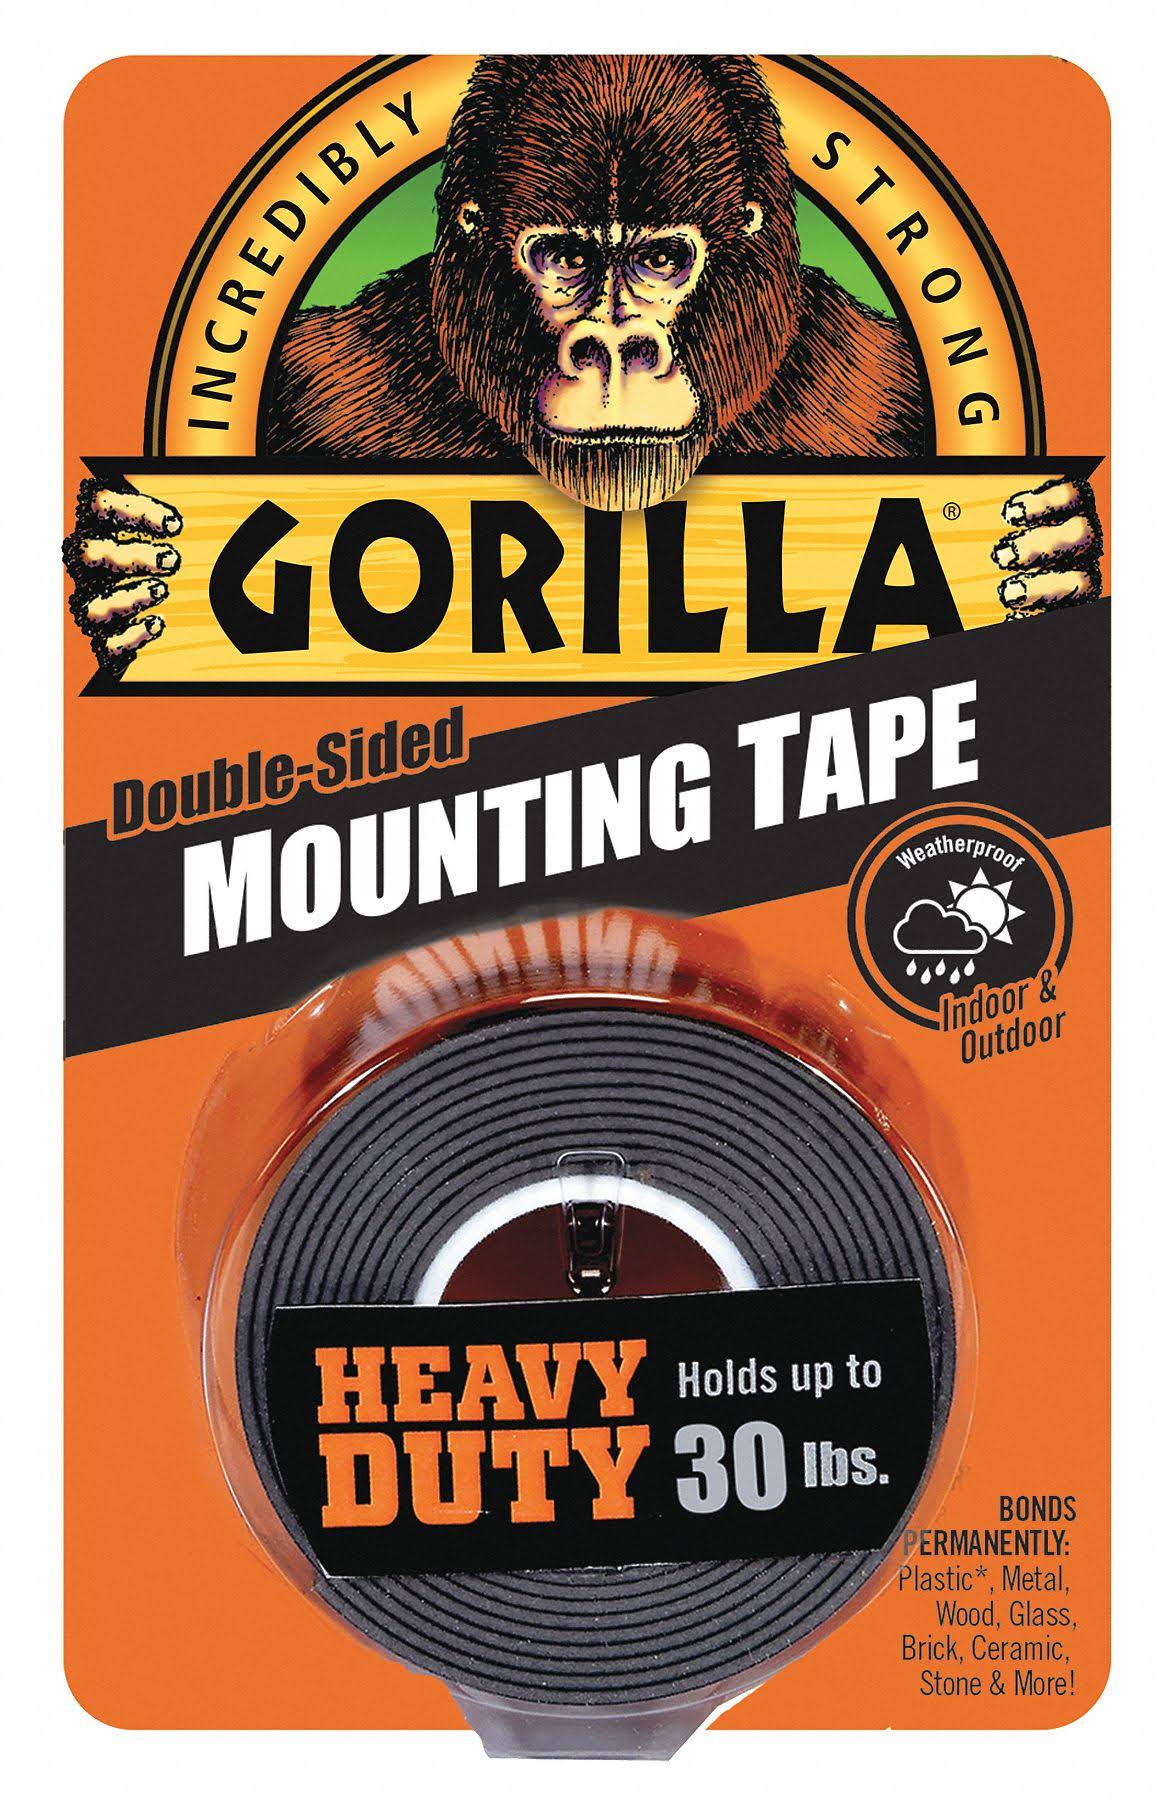 Gorilla Mounting Tape